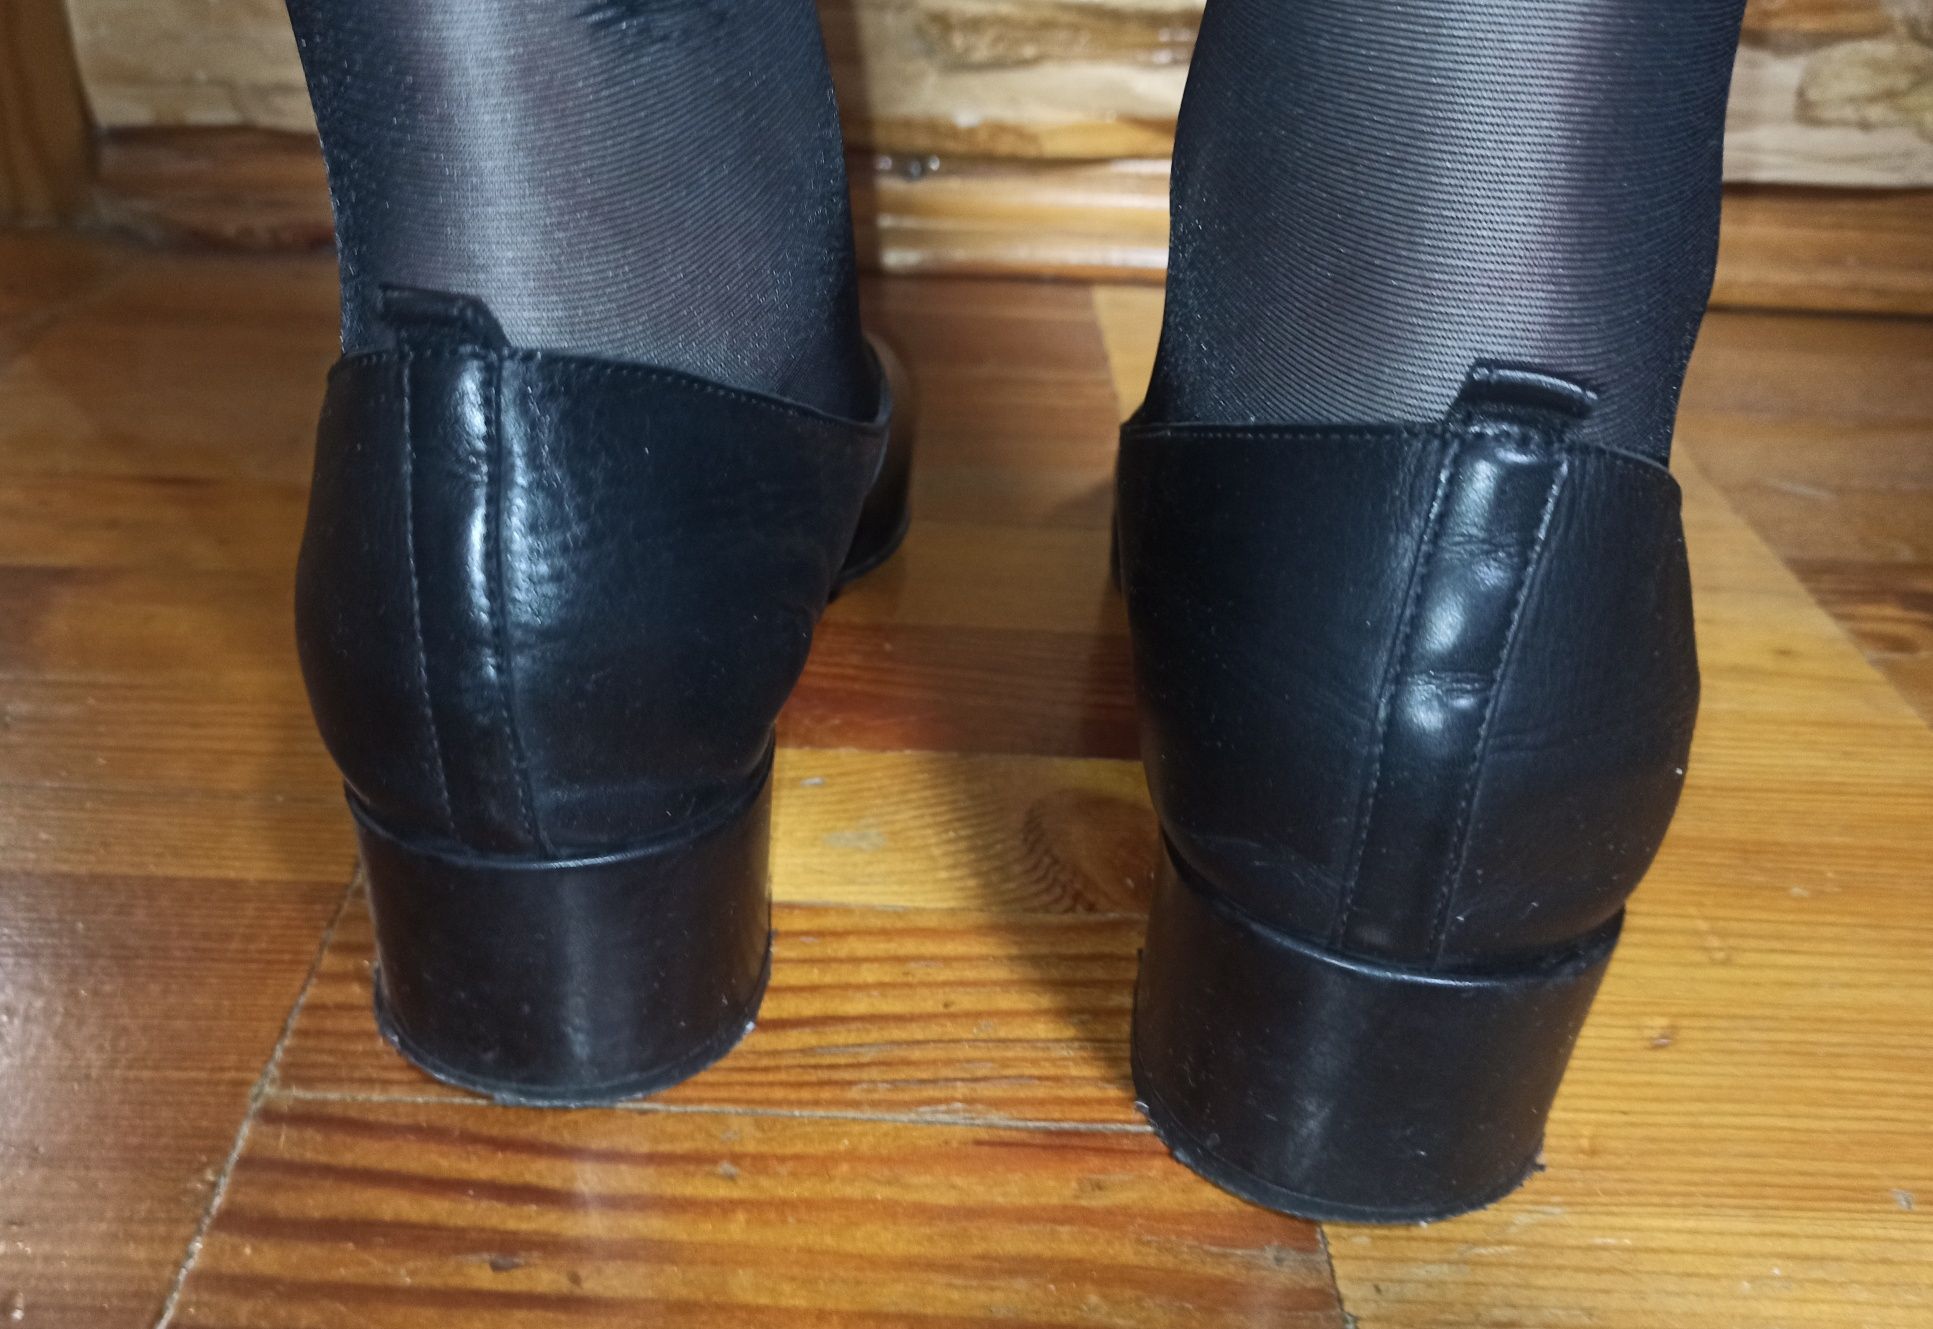 Продам чорні шкіряні польські туфлі 39 розміру